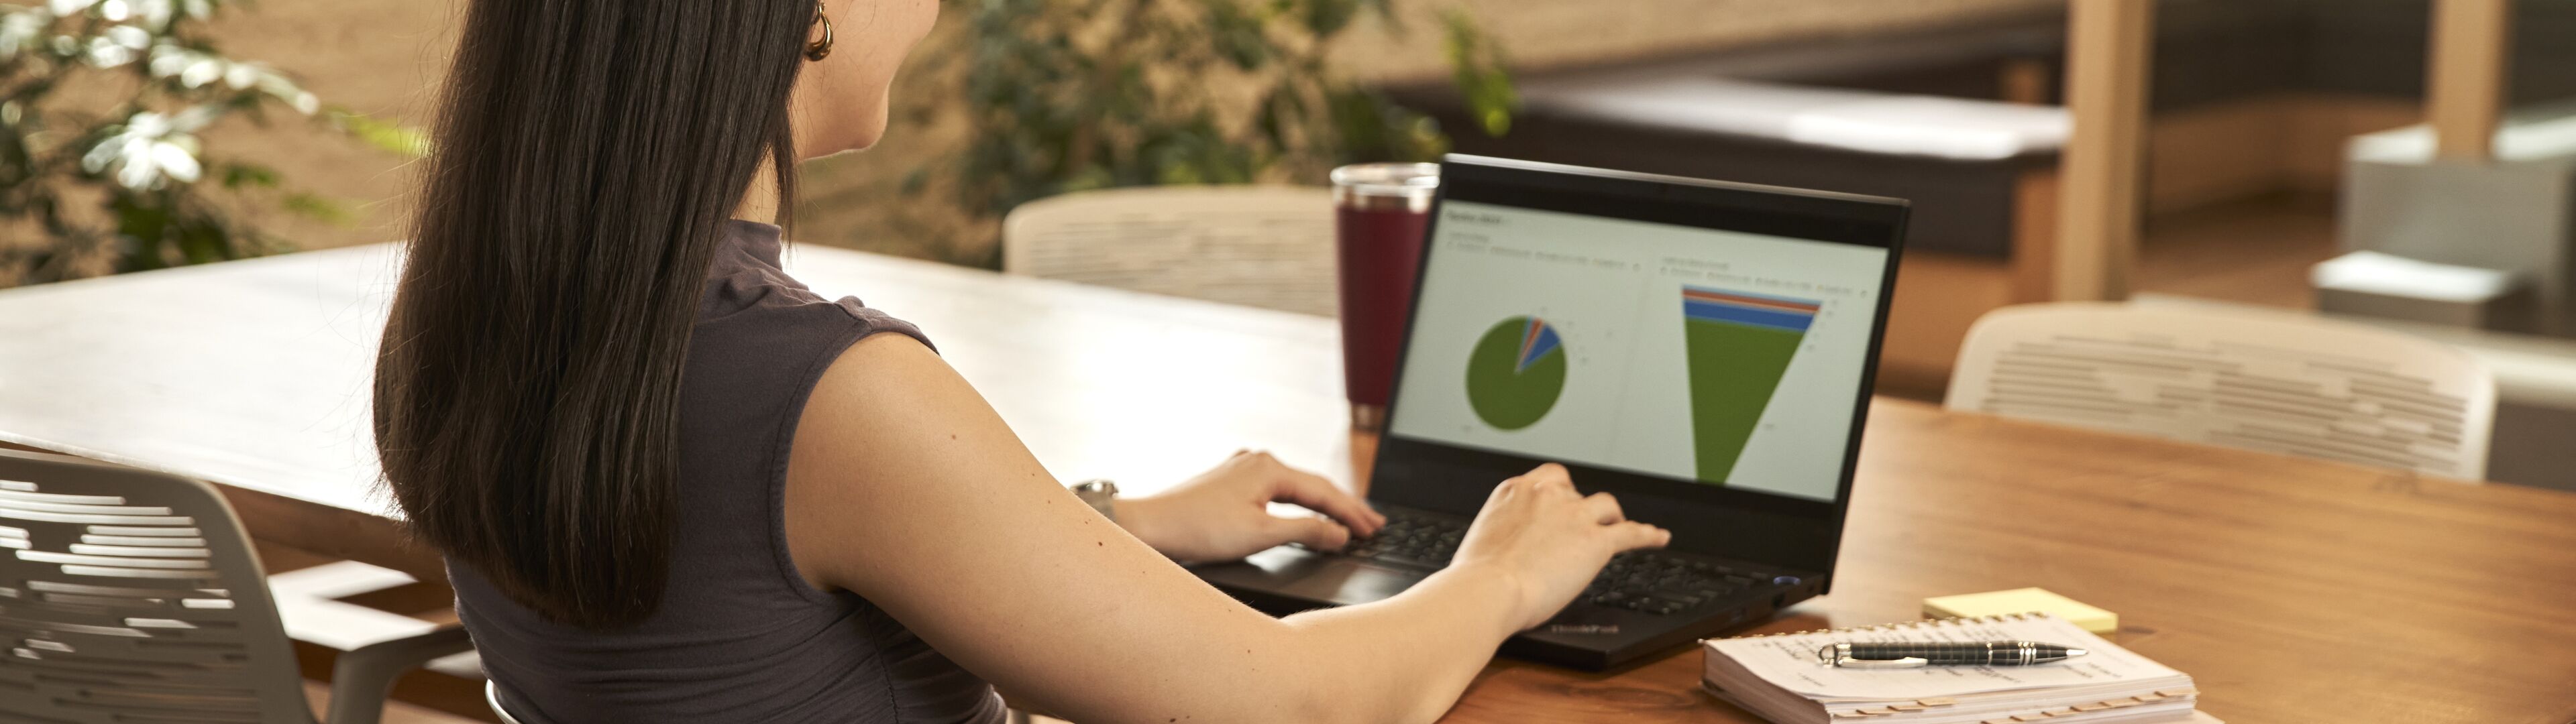 Una mujer profesional enfocada revisa gráficos circulares en un portátil en una oficina, con una bebida a su lado.